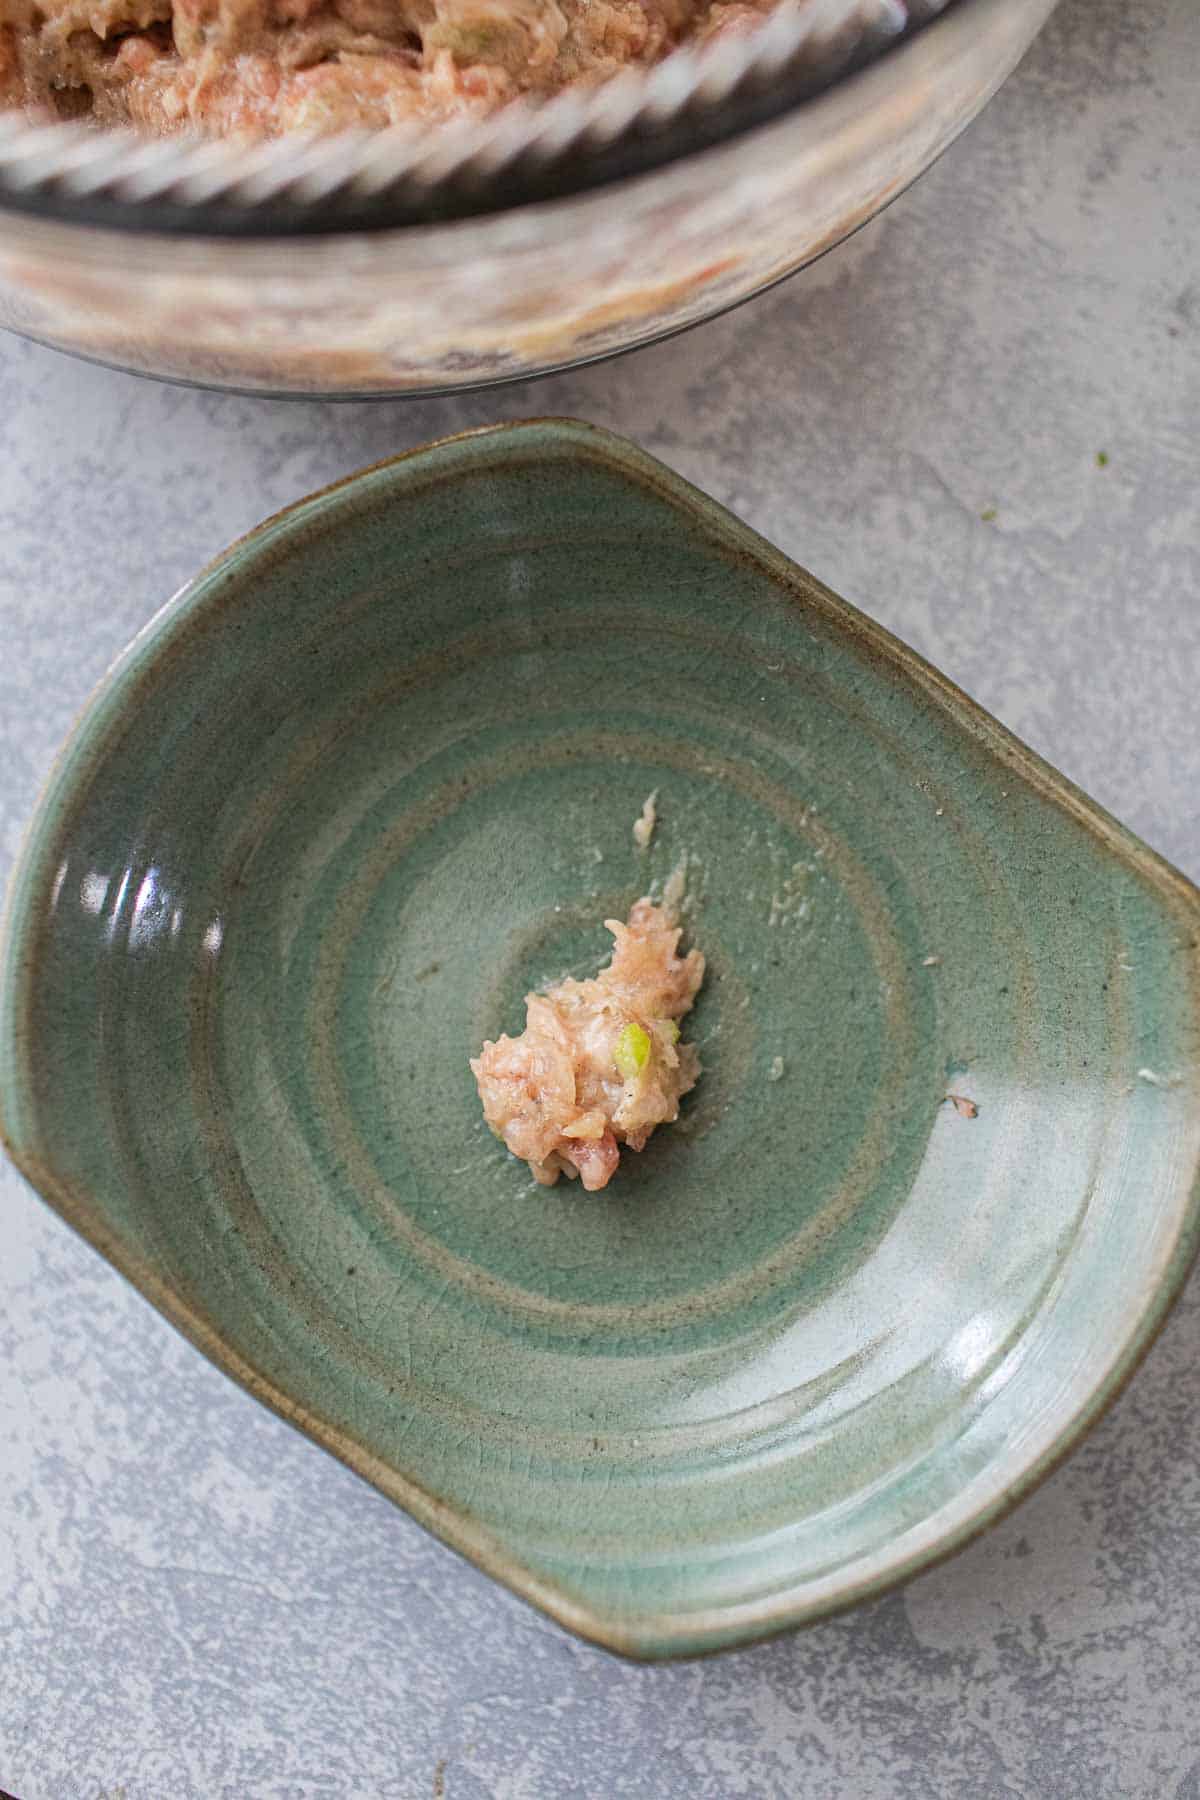 Dumpling paste in a green bowl.